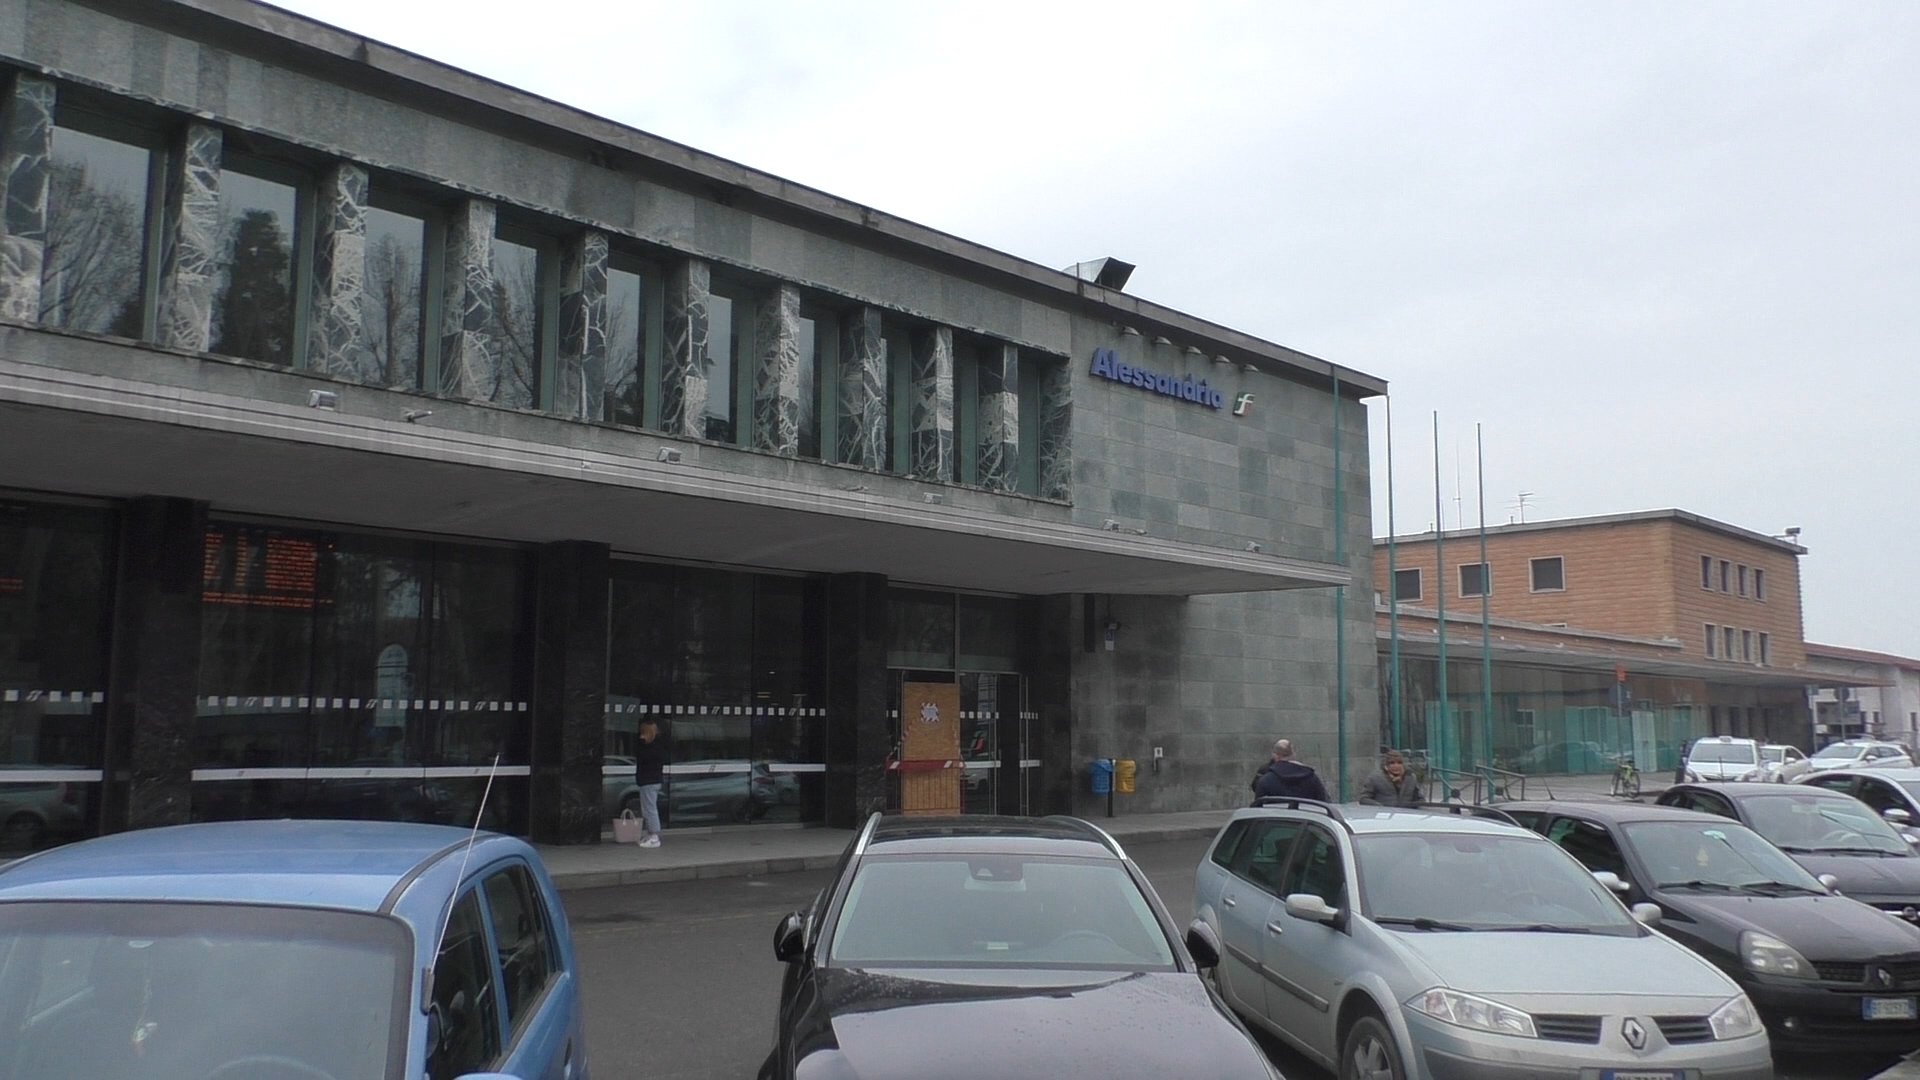 Prova a rubare una bicicletta in stazione ad Alessandria: denunciato